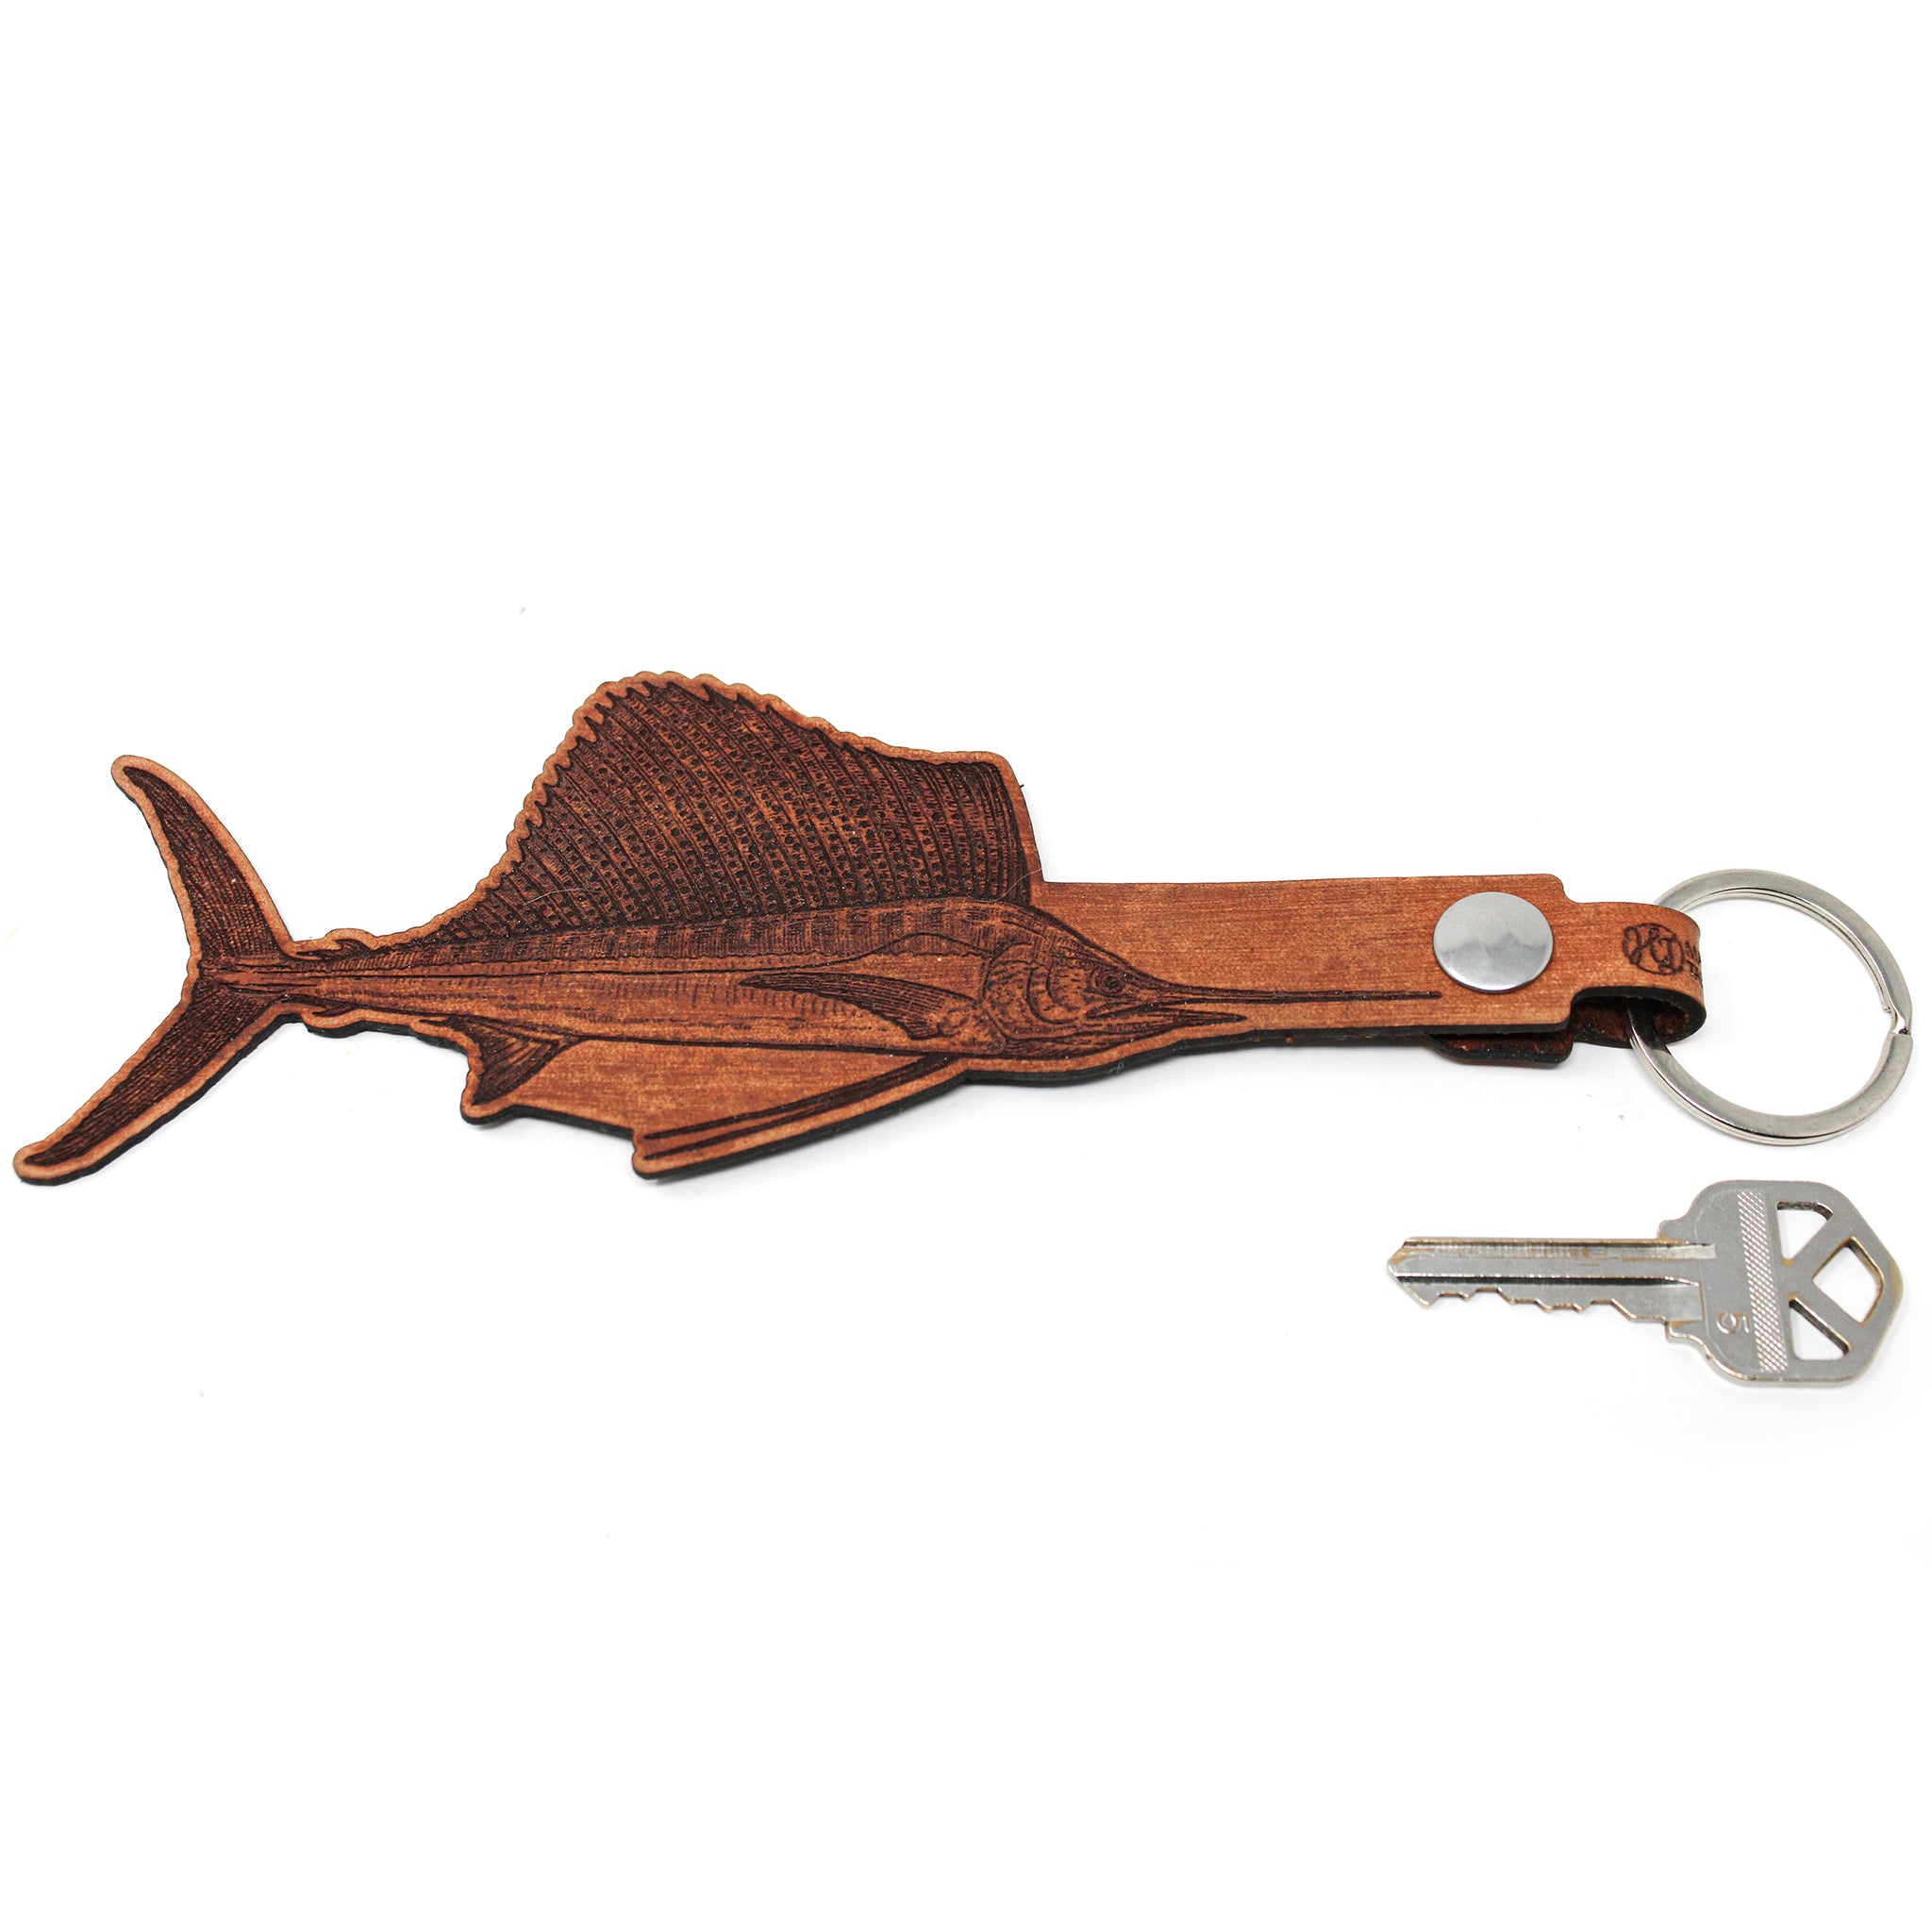 Leather Keychain - Large Sailfish Keychain